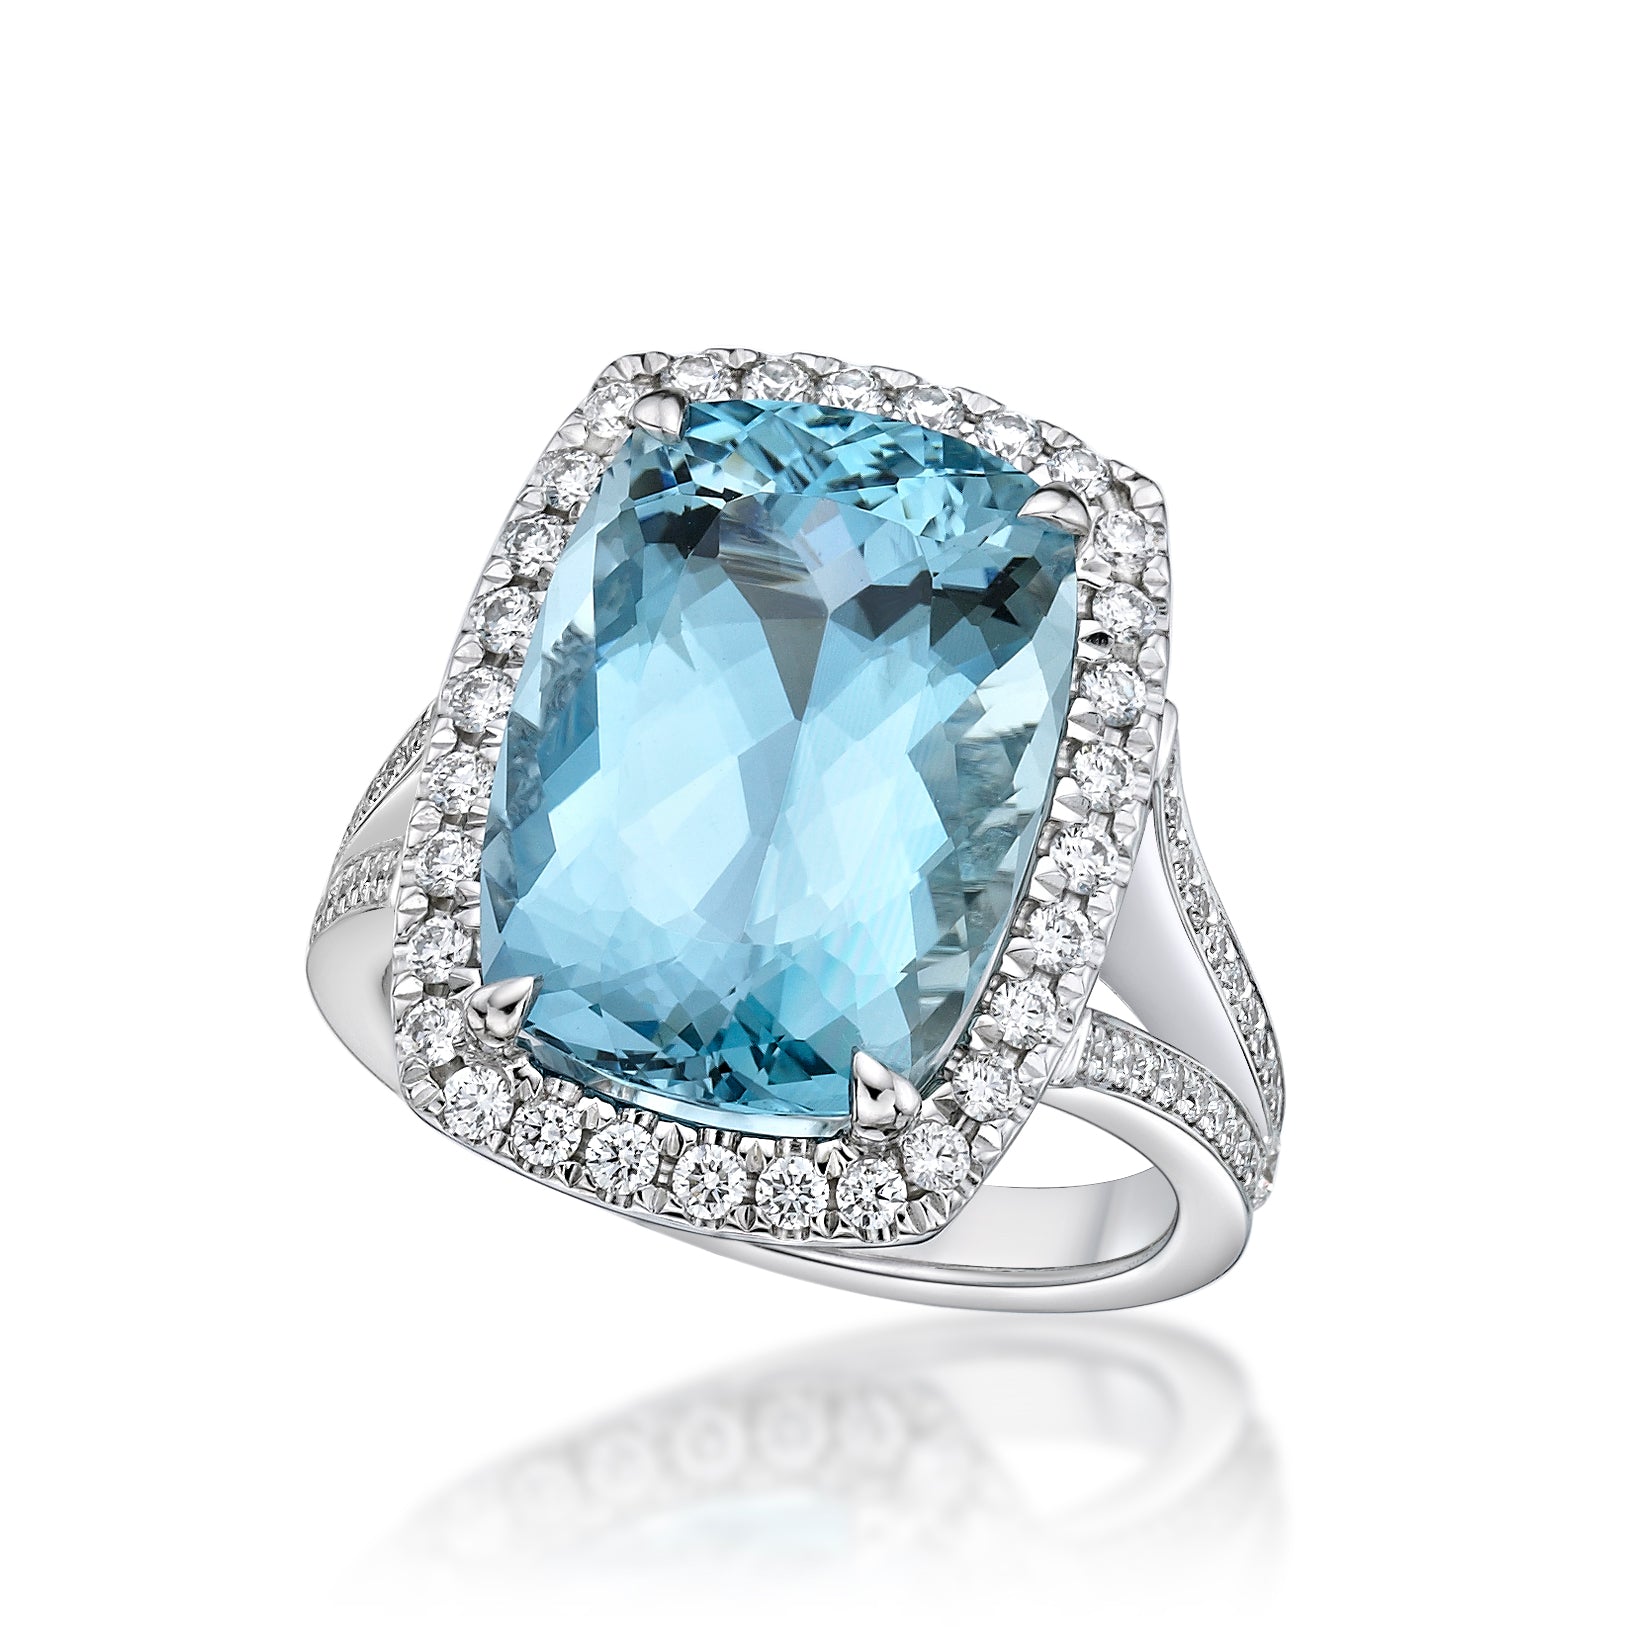 Buy Aquamarine Diamond Ring, Aquamarine Engagement Ring White Gold, Cushion  Aquamarine Halo Ring Online in India - Etsy